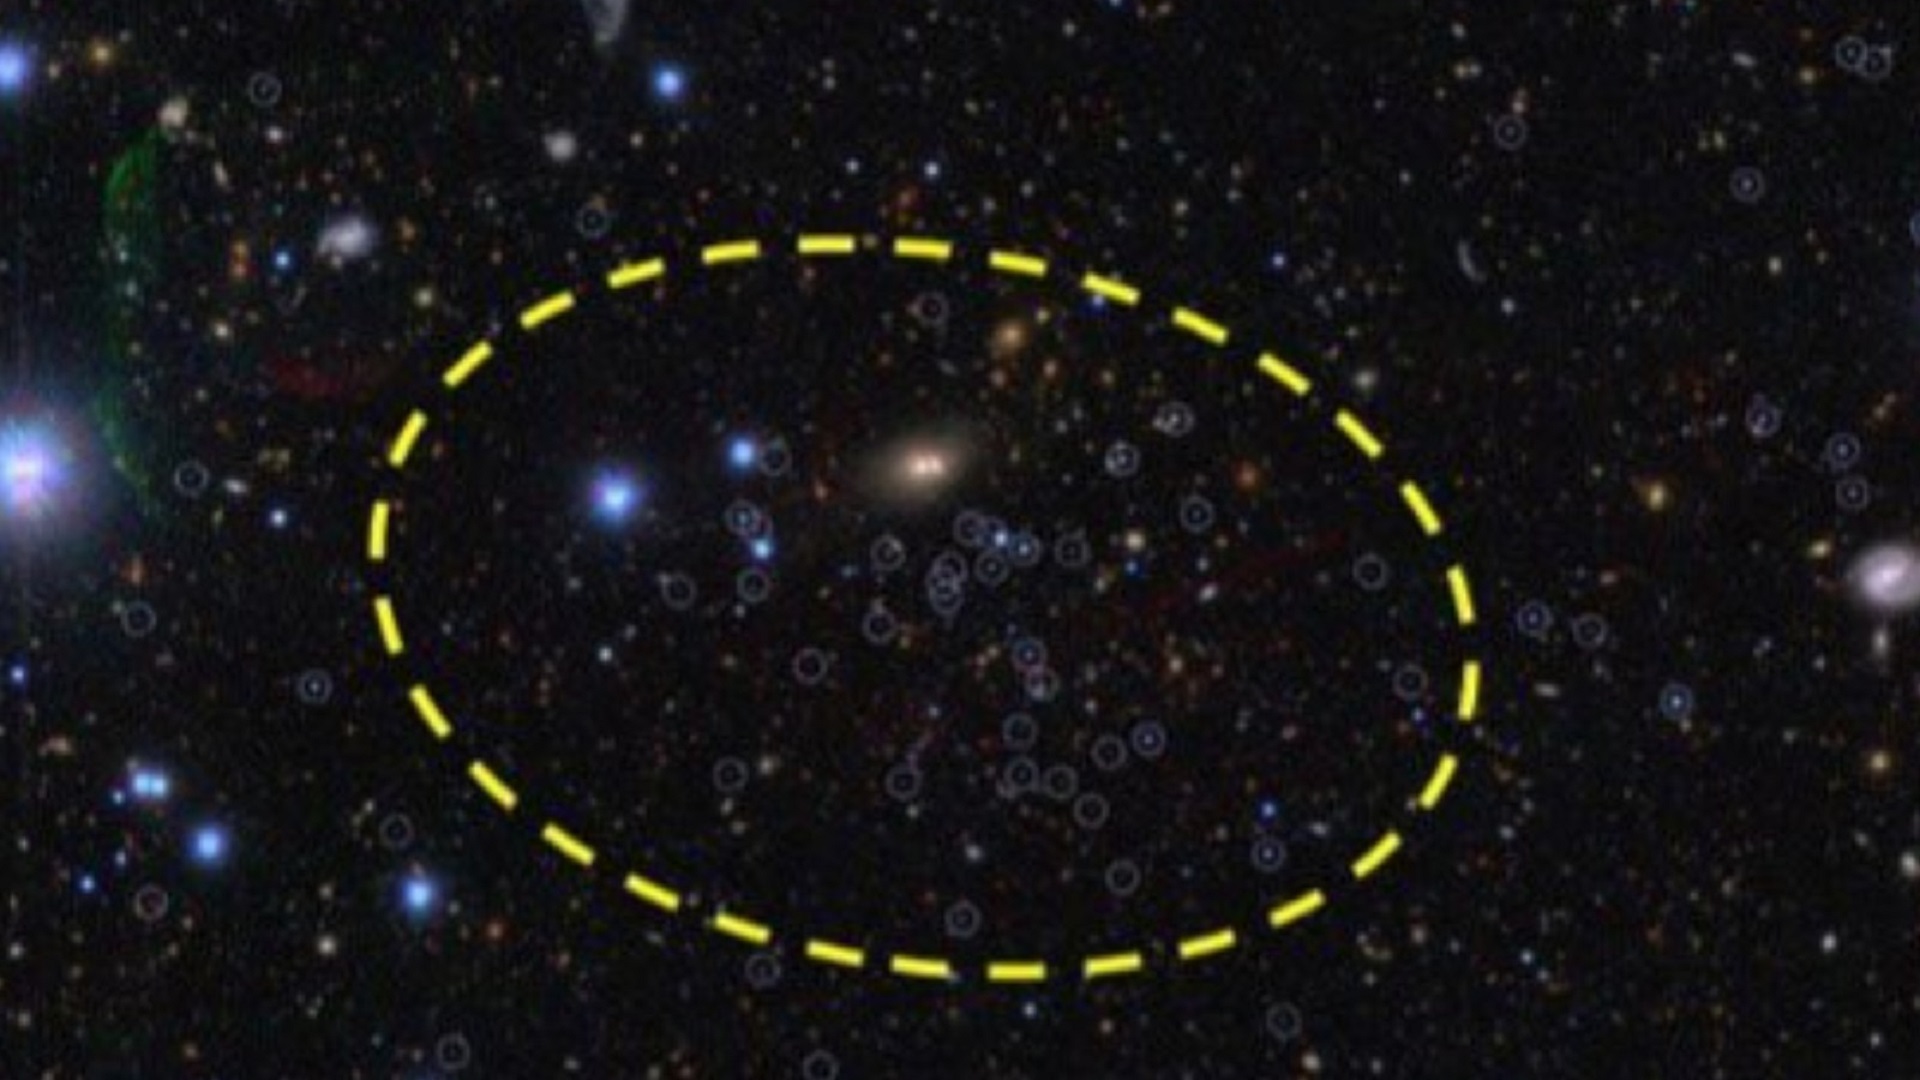 دانشمندان سرانجام ۲ تا از کهکشان های ماهواره ای گم شده راه شیری را پیدا کردند. این برای نجوم چه معنایی می تواند داشته باشد؟